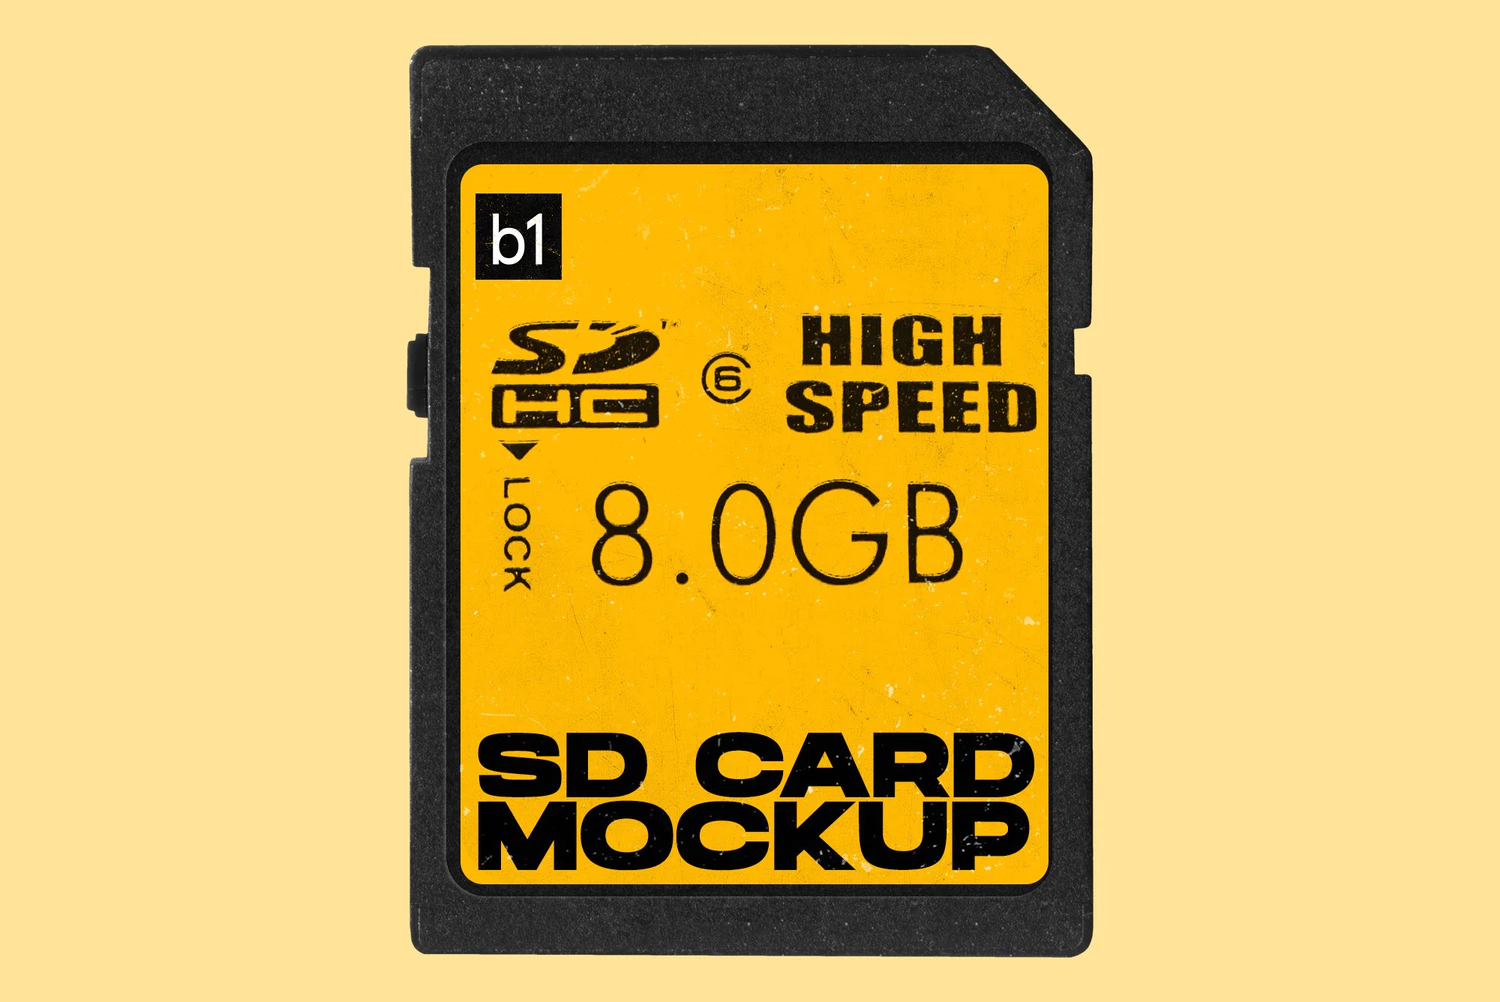 2647 电子品牌设计内存卡SD卡展示高清PNG模型 SD Memory Card Mockup